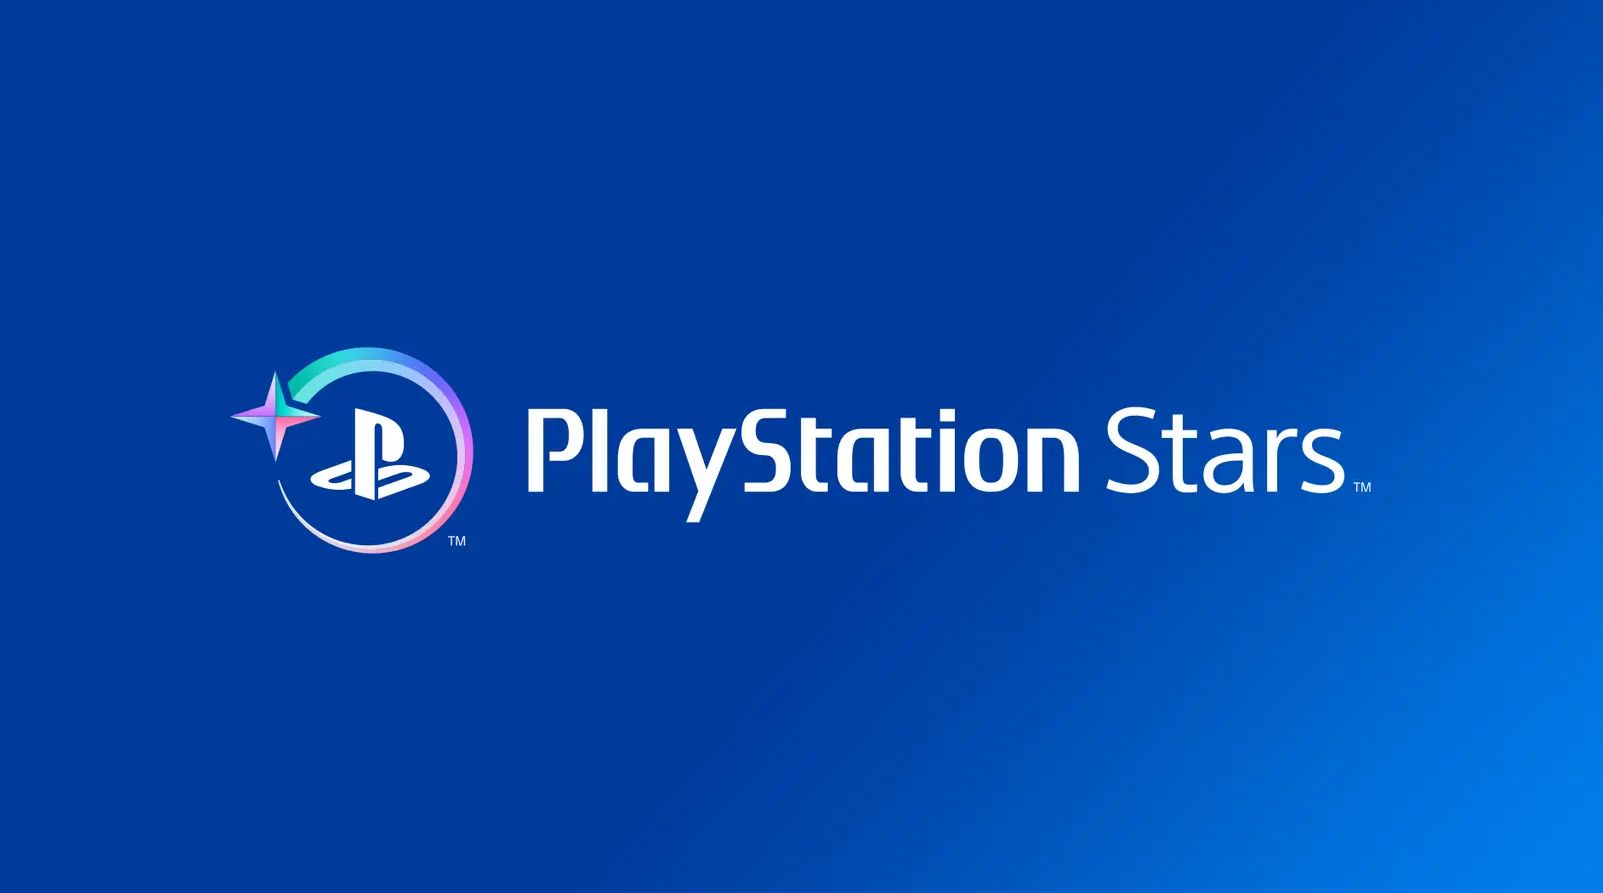 #PlayStation Stars lässt euch „digitale Sammlerstücke“ verdienen, hat aber nichts mit NFT zu tun